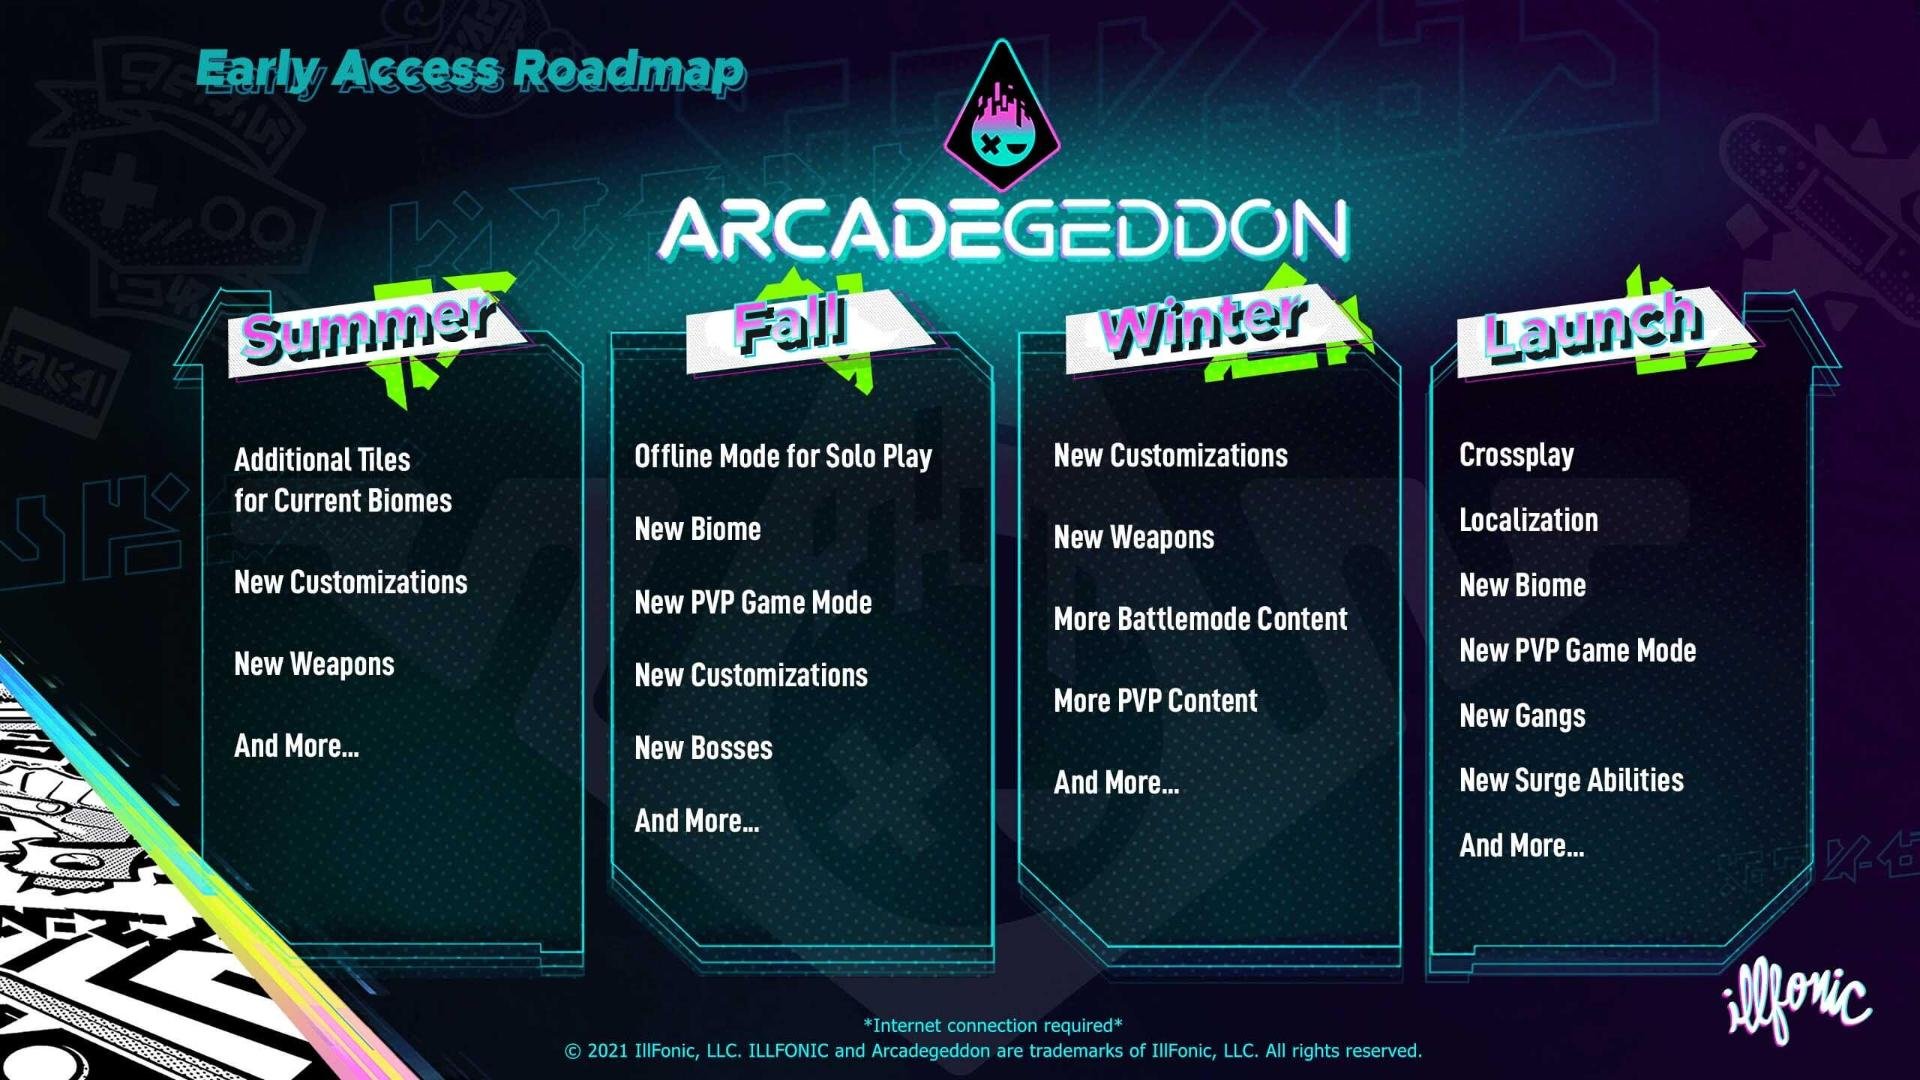 Roadmap oficial de Arcadegeddon detalha novos conteúdos, incluindo novidades para o lançamento.